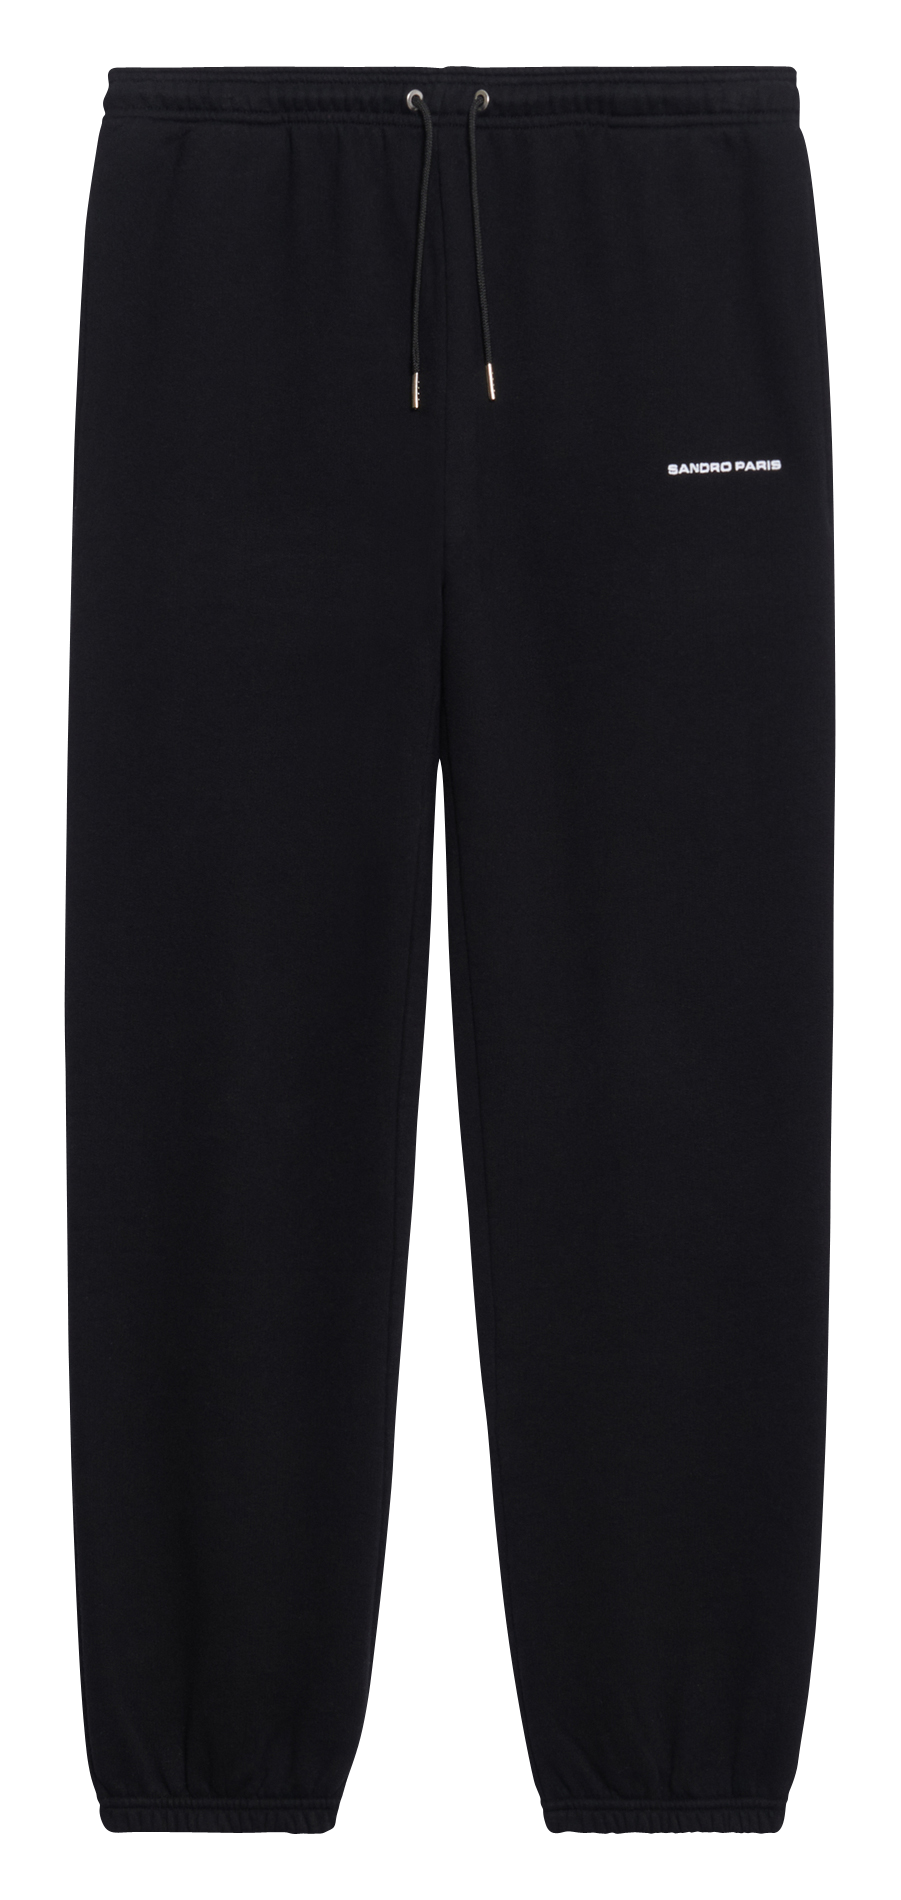 Hombre Ropa de Pantalones Pantalones en mezcla de algodón Fendi de Algodón de color Negro para hombre pantalones de vestir y chinos 